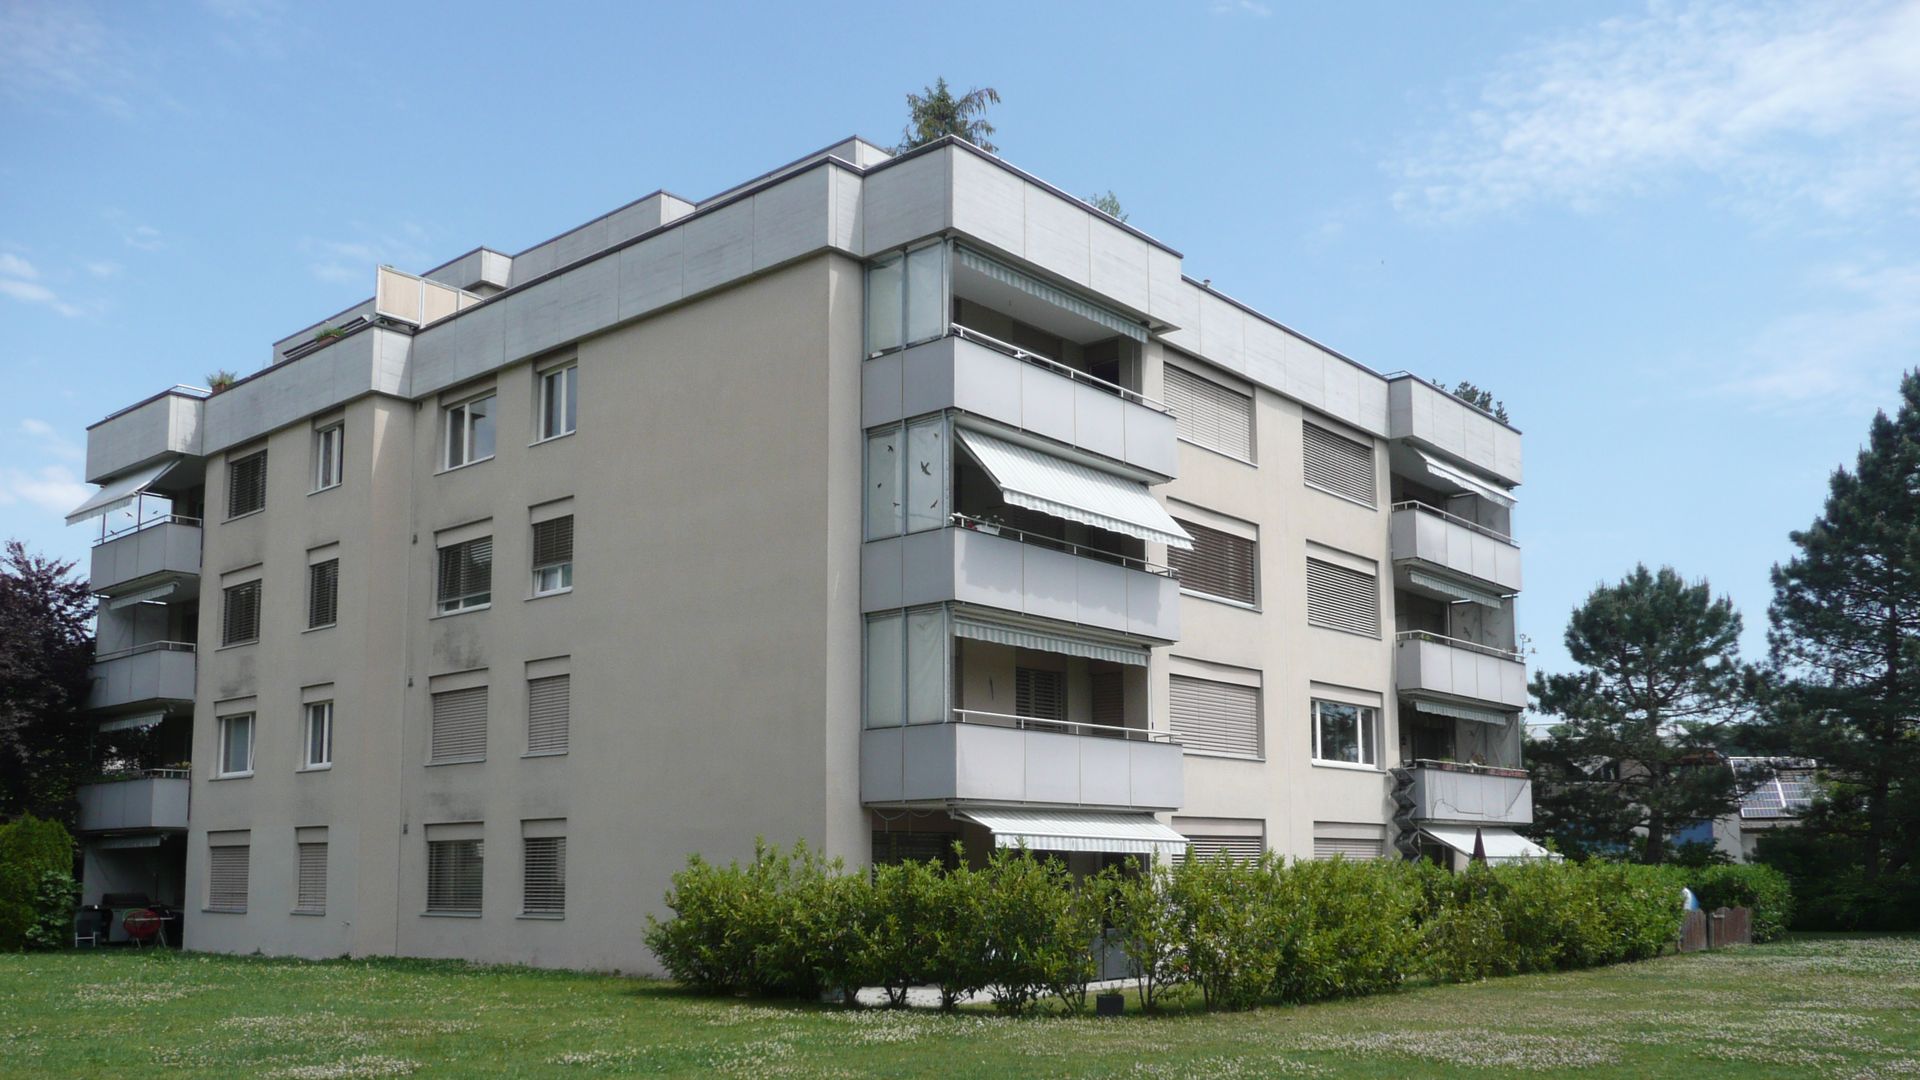 4 bedroom apartment at Stettemerstrasse 70, 8207 Schaffhausen ...